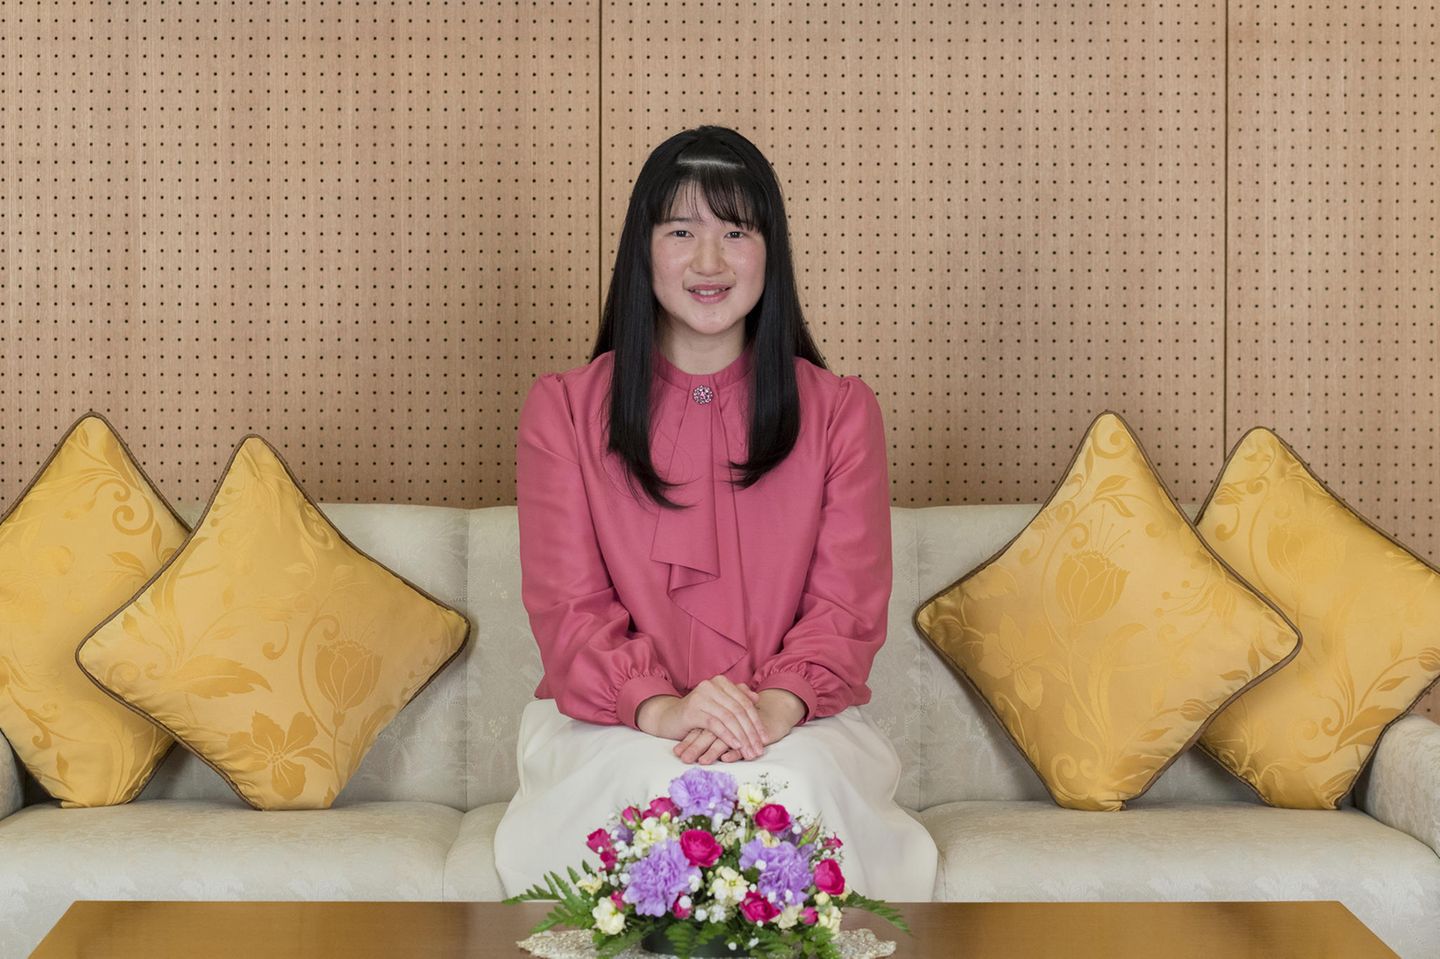 25. November 2019  Einige Tage vor ihrem 18. Geburtstag veröffentlicht der japanische Hof offizielle Fotos von Prinzessin Aiko. Die nun volljährige Prinzessin trägt einen cremefarbenen knielangen Rock und eine rosafarbene Schluppenbluse. 